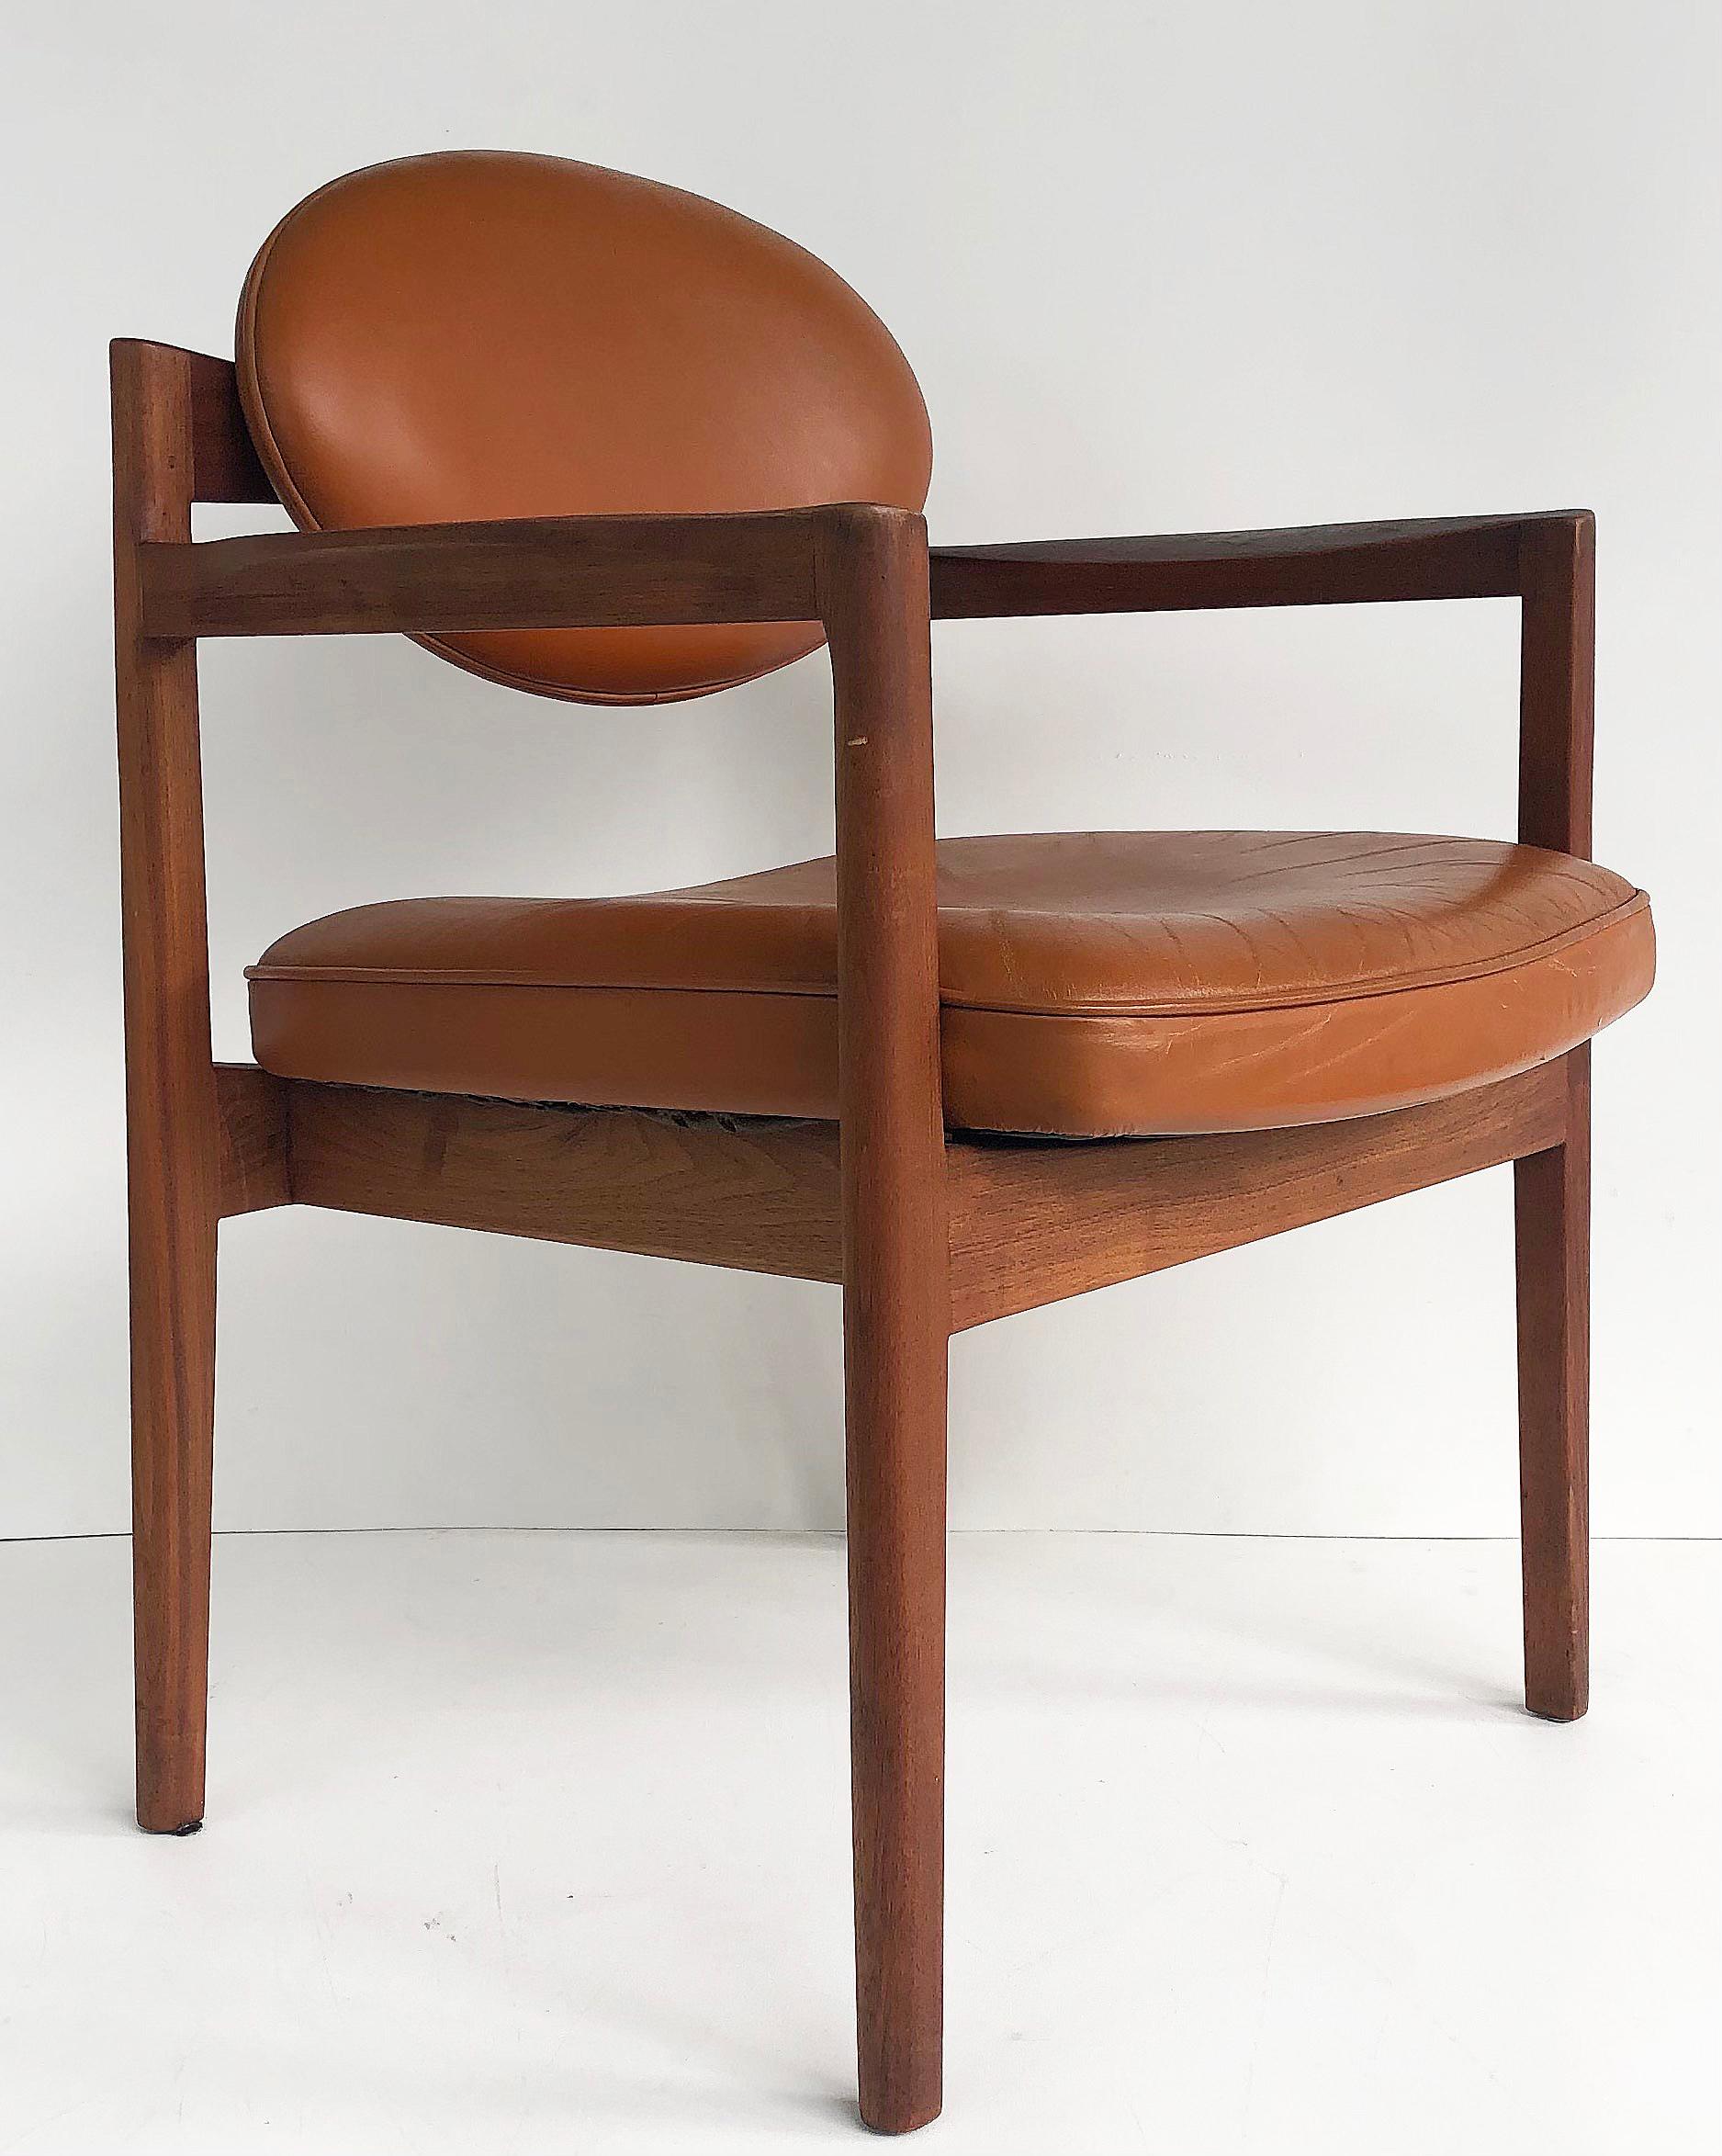 Zum Verkauf angeboten wird ein originales Paar Jen Risom Design Sessel aus geöltem Nussbaum und mit Leder bezogen. Die Stühle haben gepolsterte ovale Rückenlehnen auf einem skulpturalen Nussbaumsockel, um 1965. Eine Neuauflage des Stuhls wird